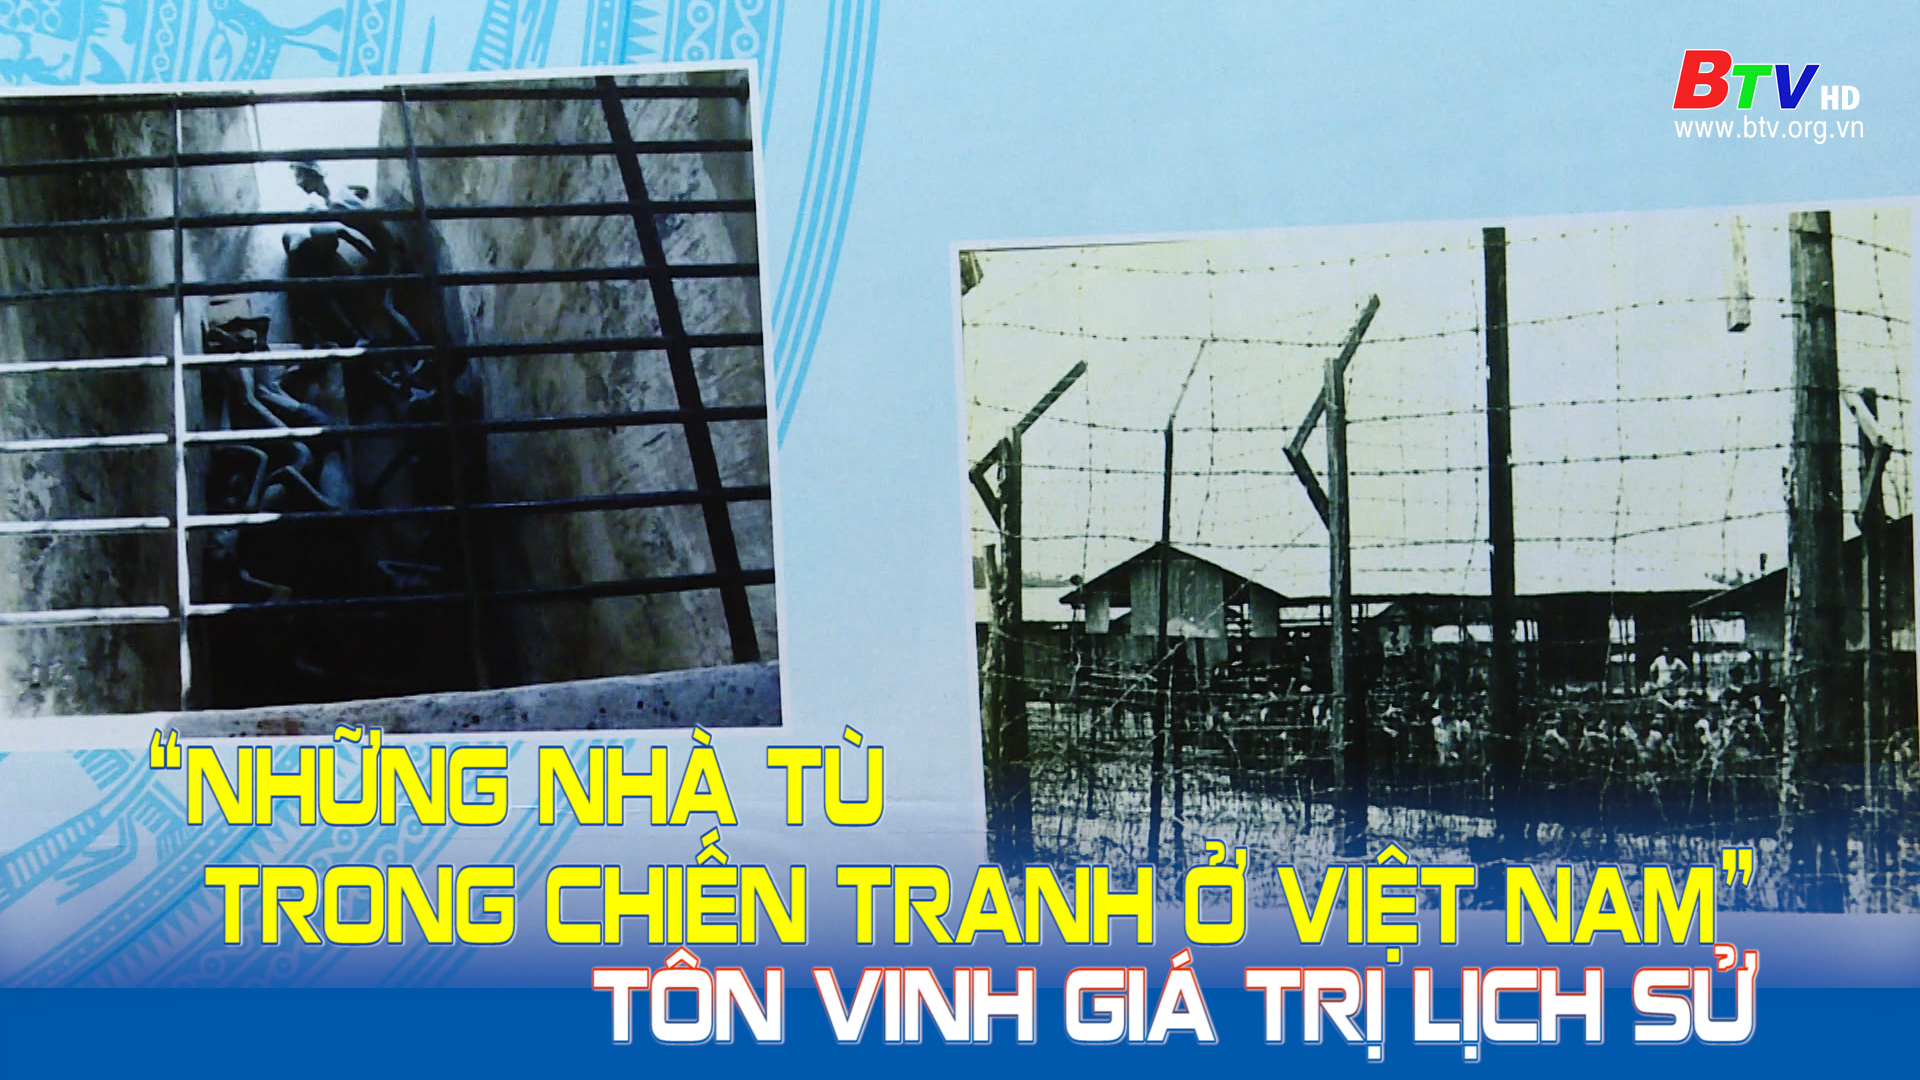 “Những nhà tù trong chiến tranh ở Việt Nam” - Tôn vinh giá trị lịch sử